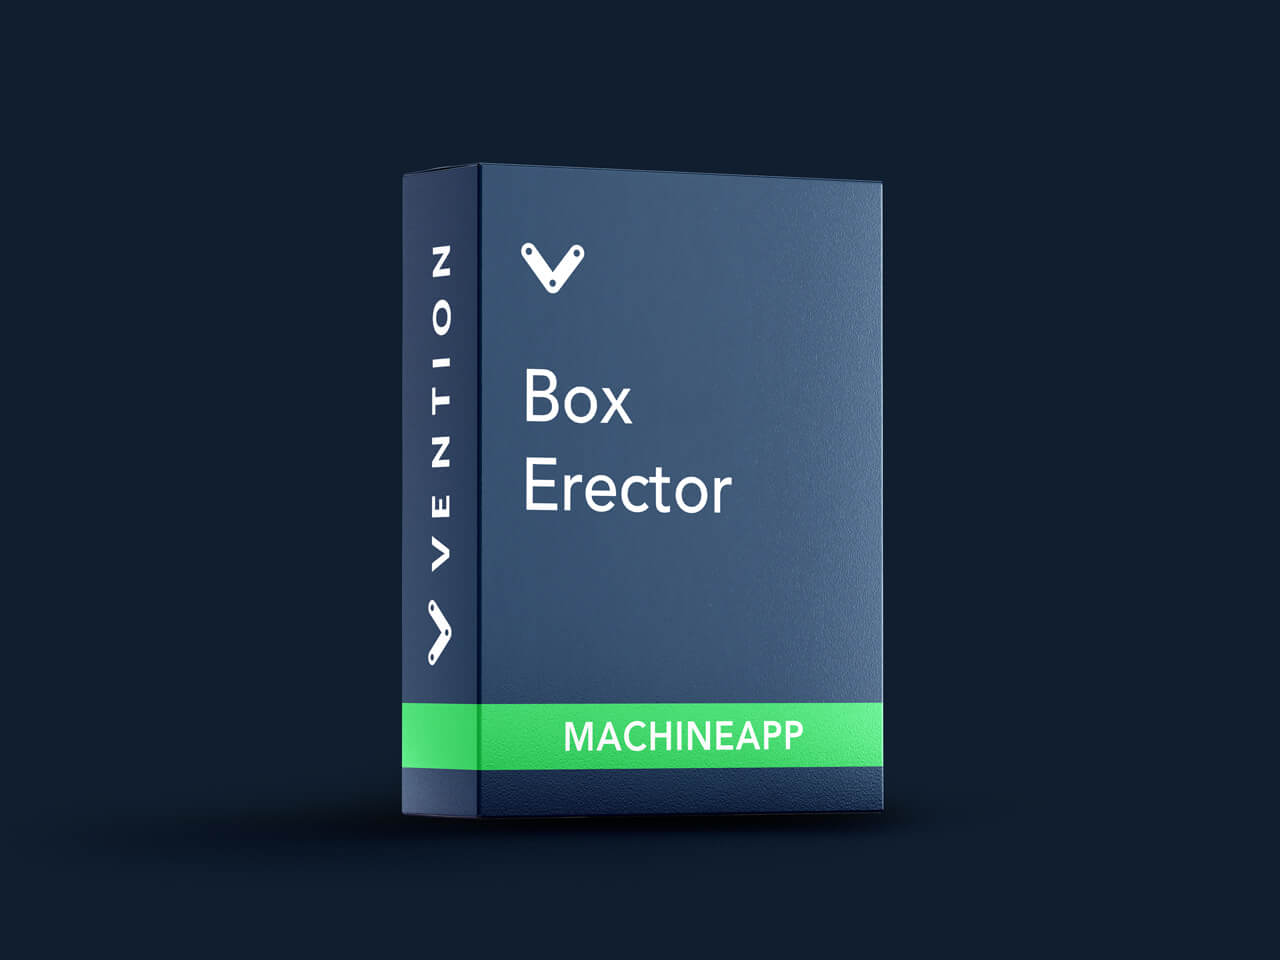 Box Erector